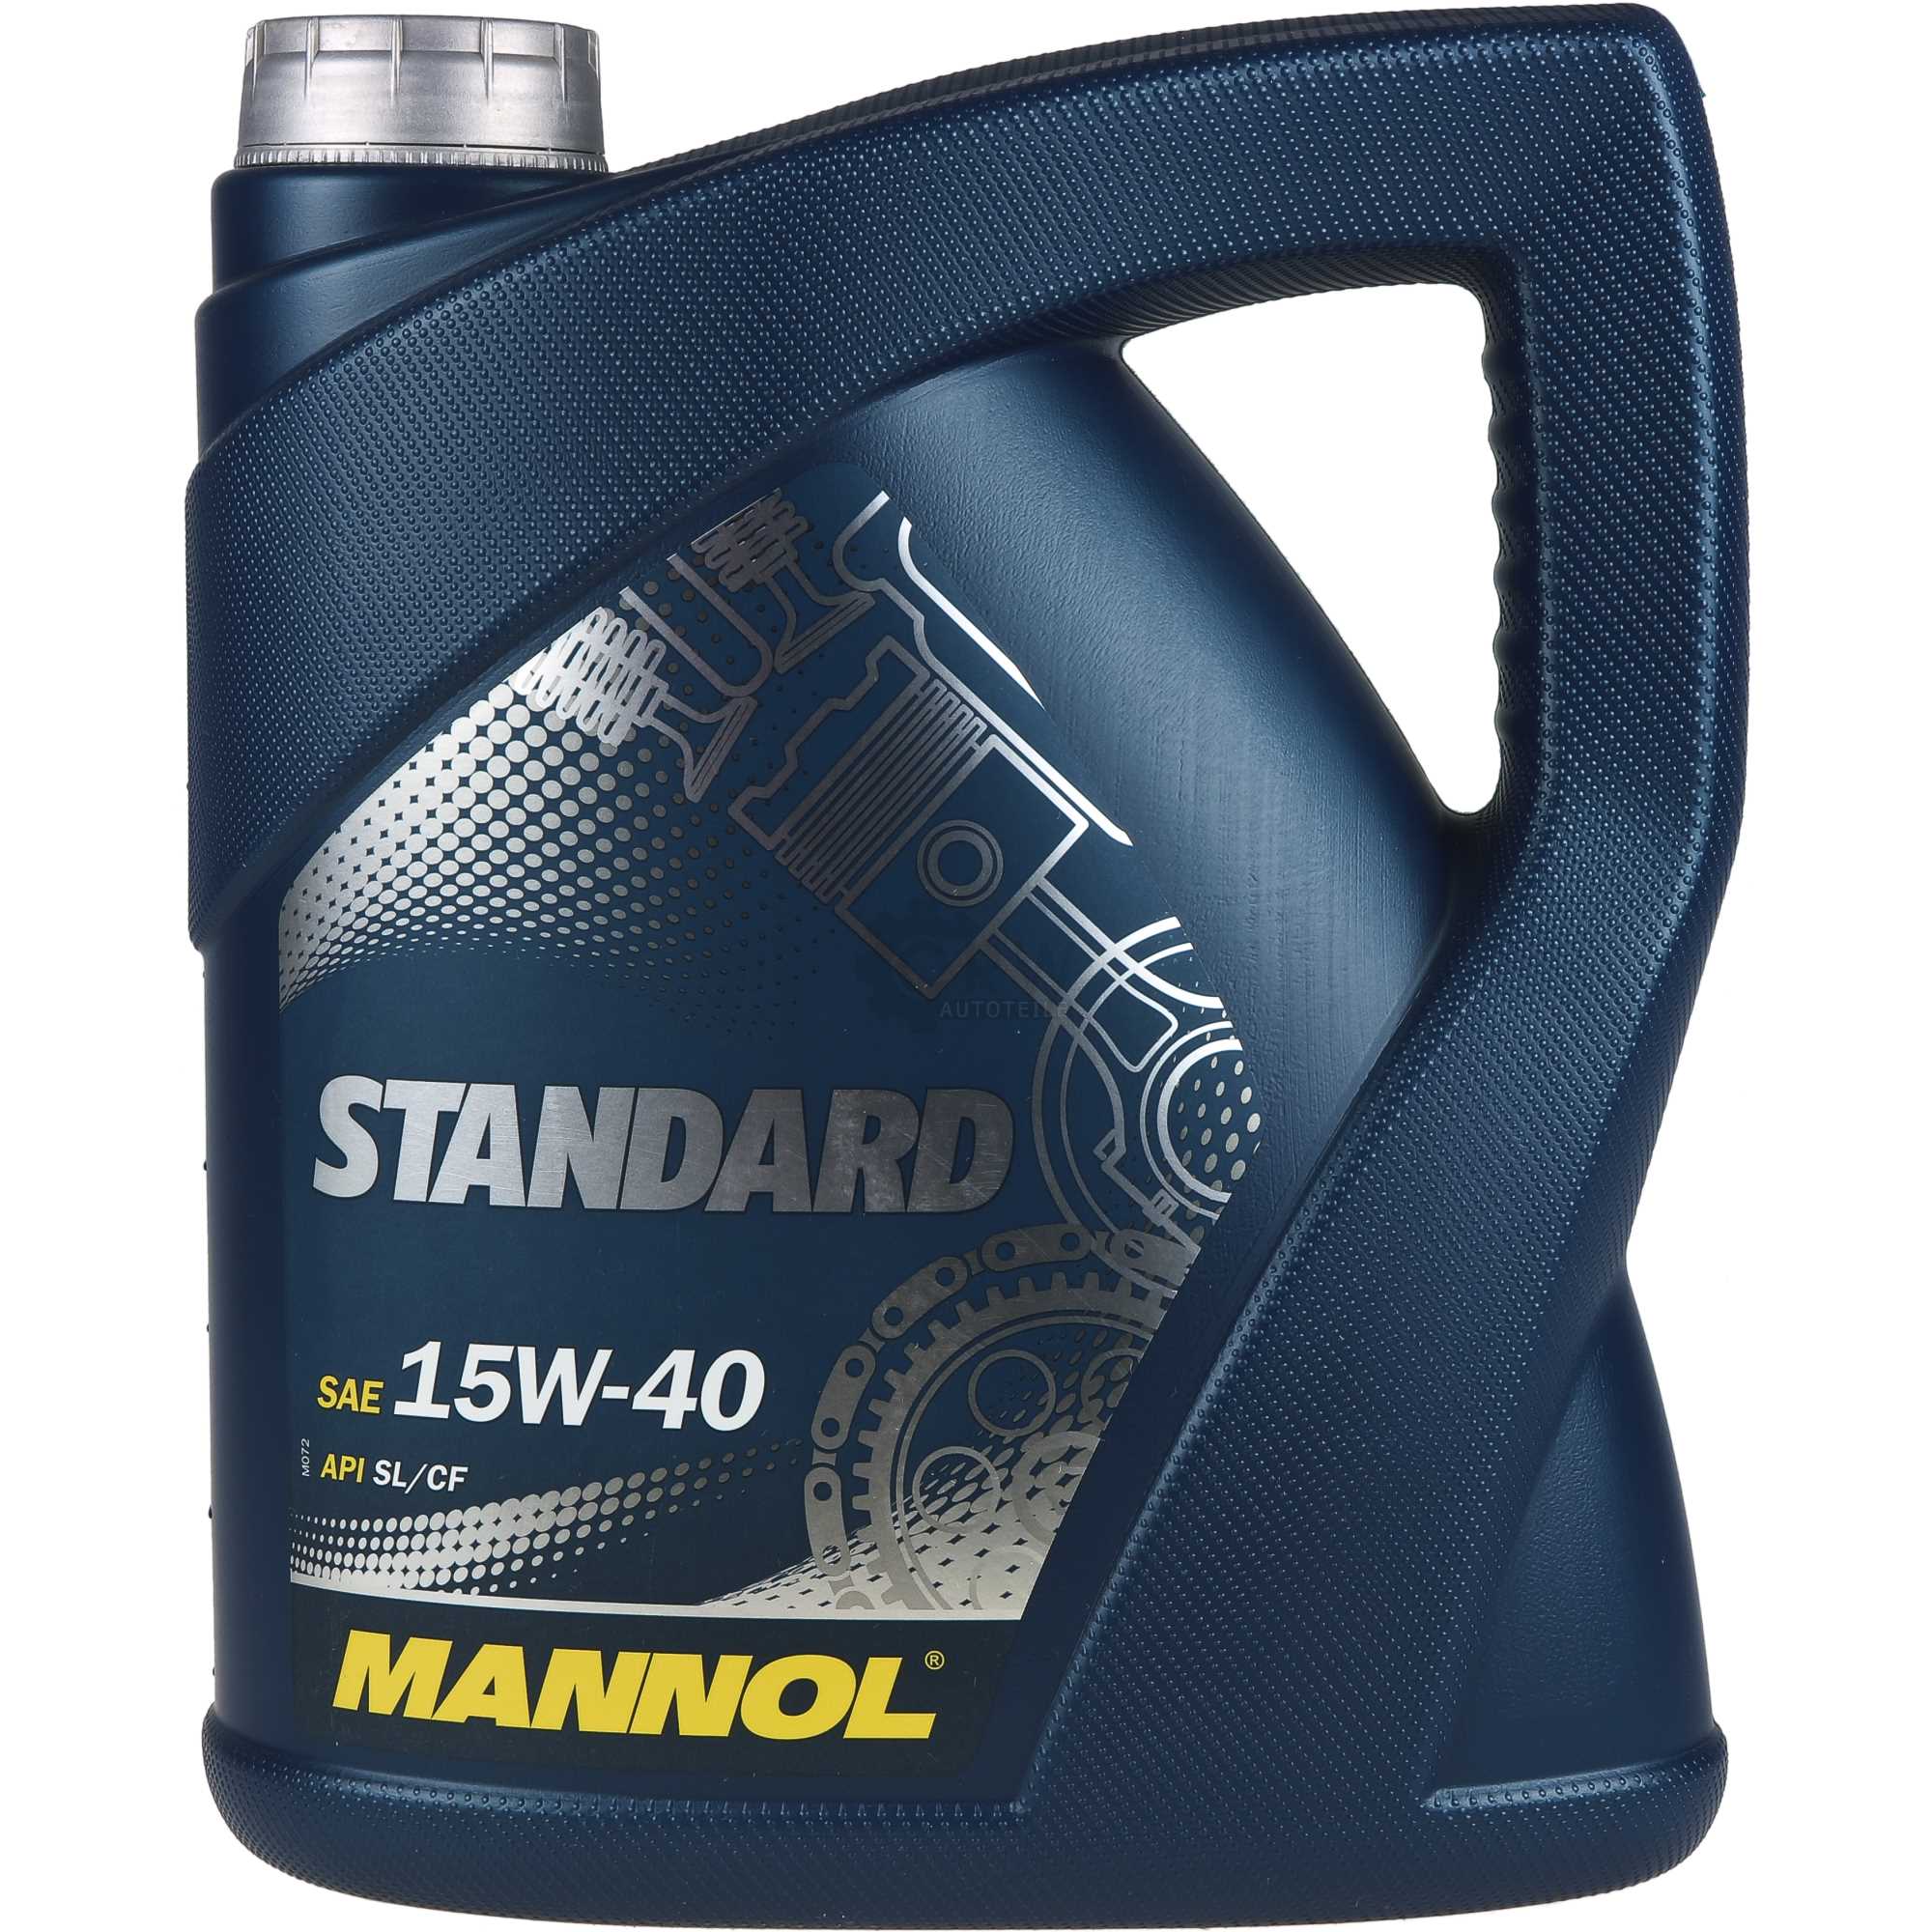 24L Olej silnikowy MANNOL Standard 15W-40 5x MANNOL Motor Flush ADDITIVE Ograniczona SPRZEDAŻ, GORĄCA